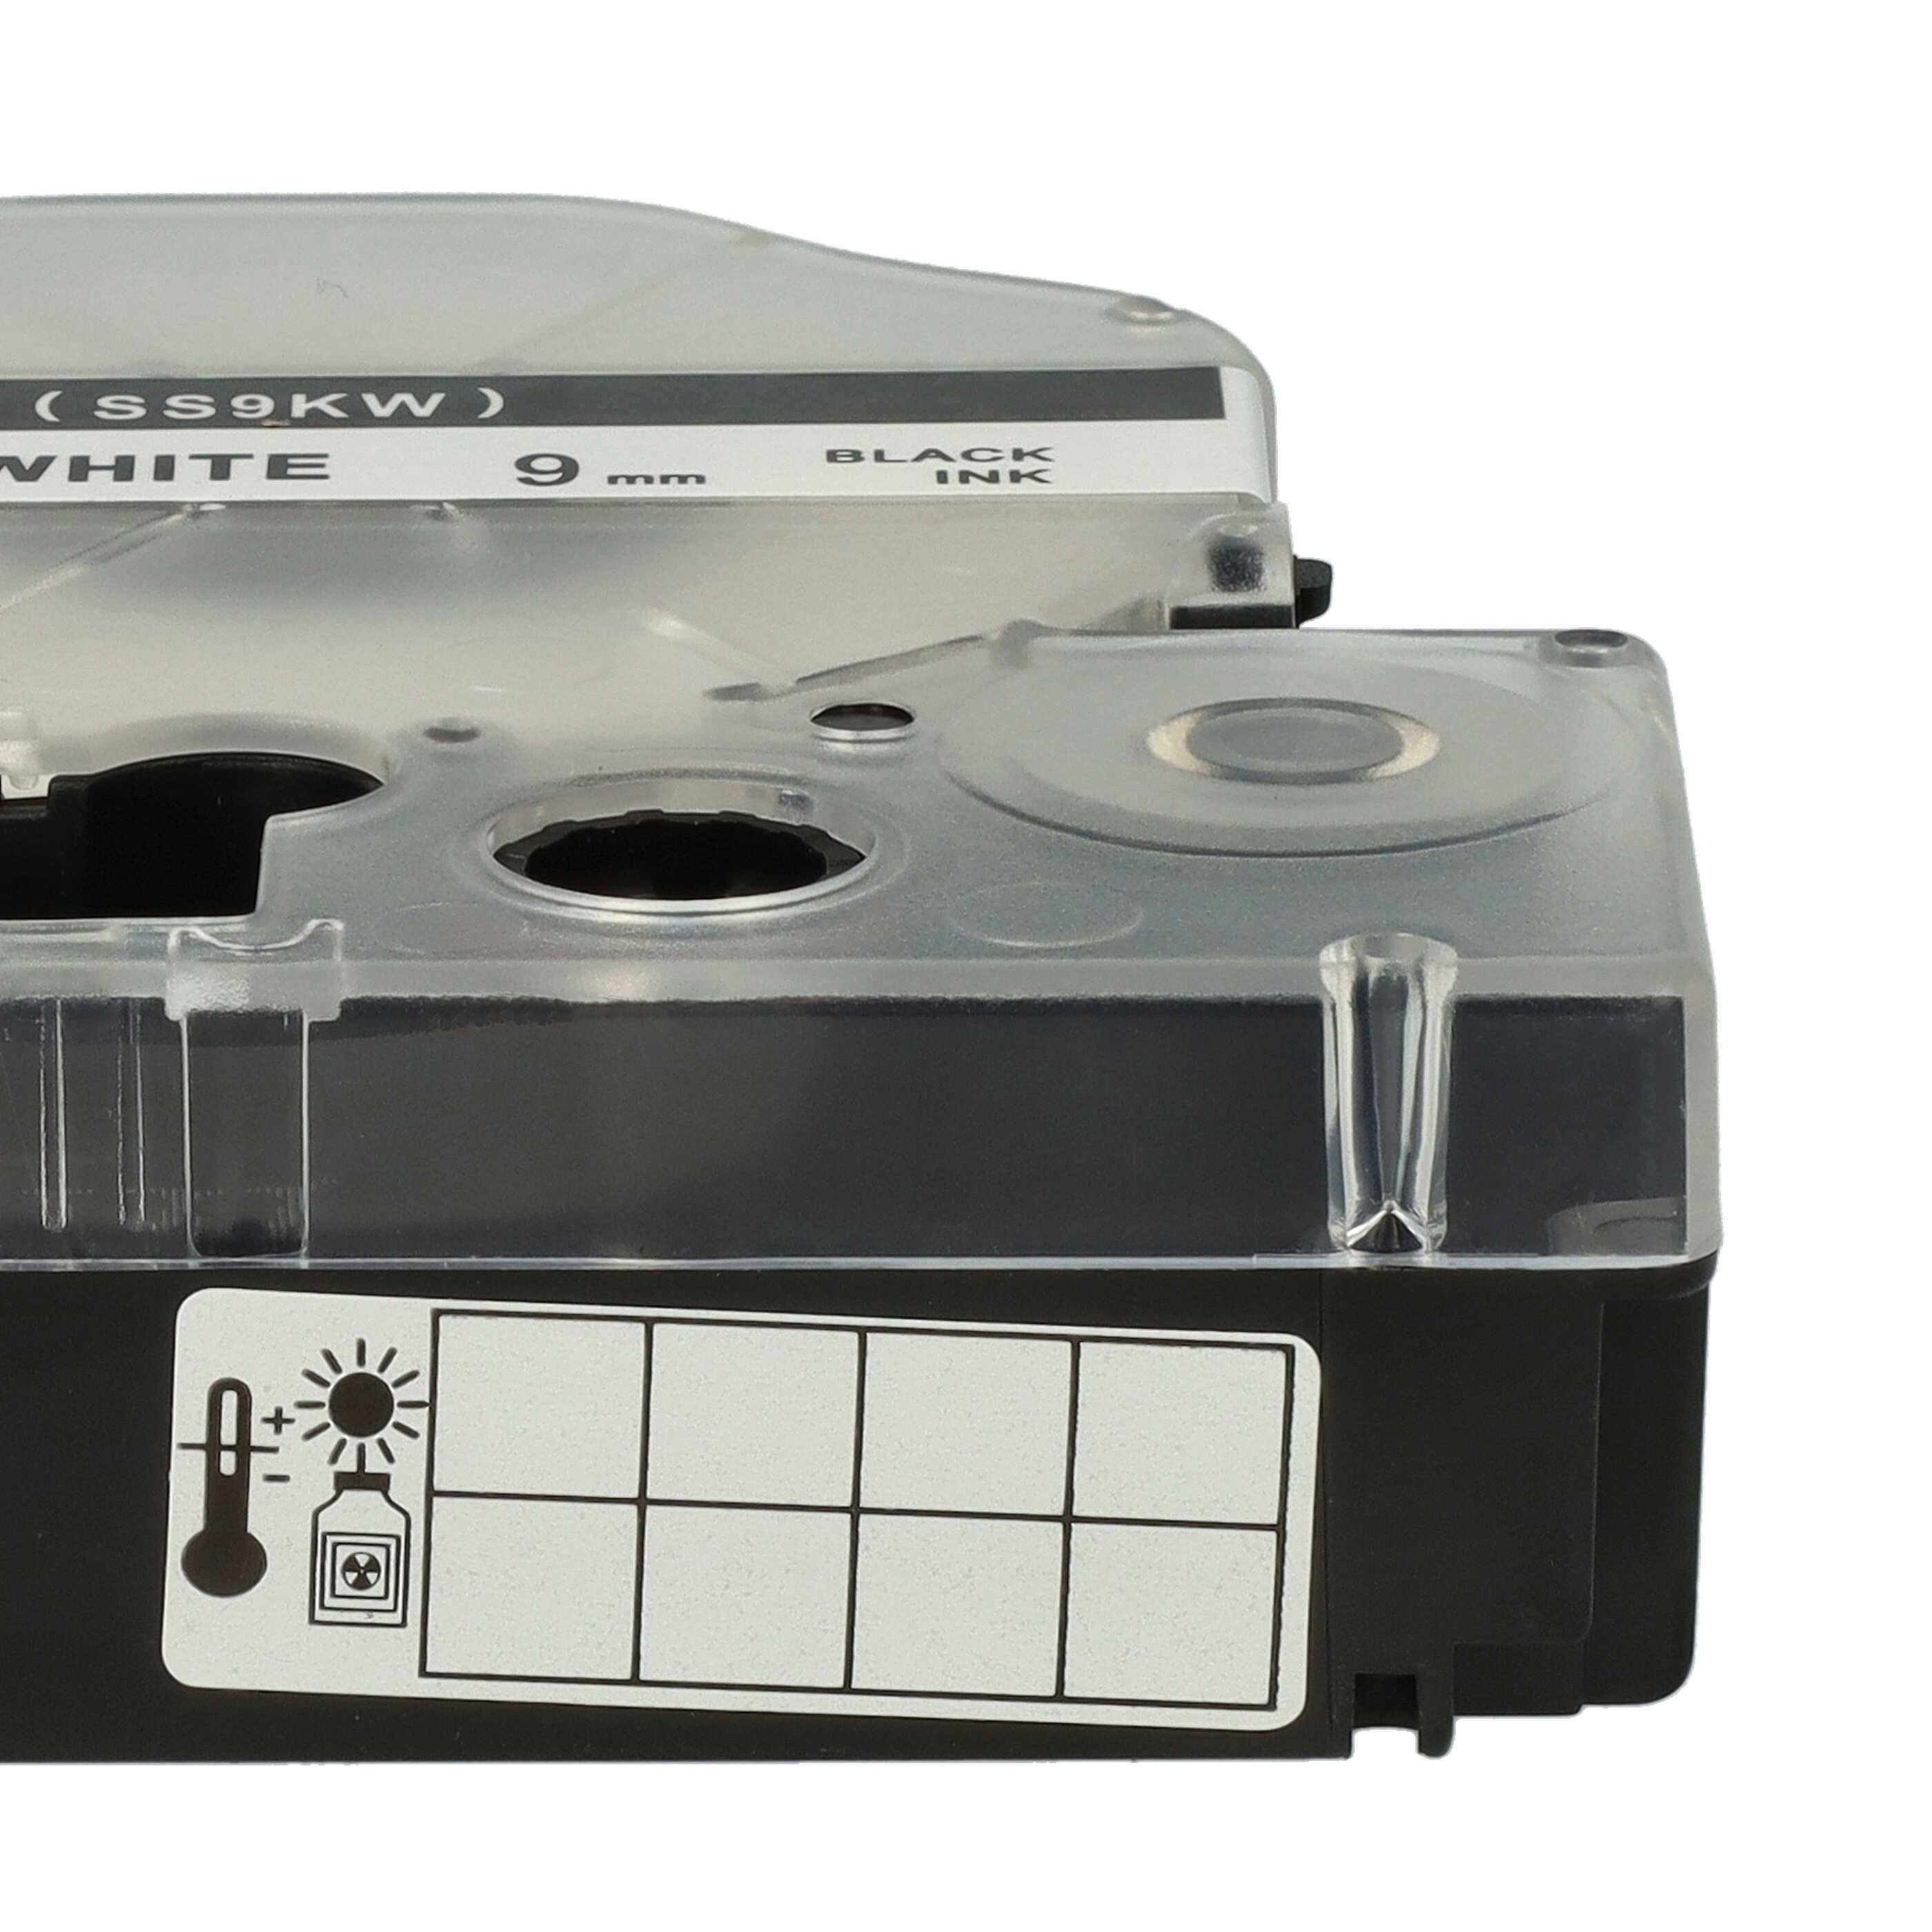 10x Cassetta nastro sostituisce Epson SS9KW, LC-3WBN per etichettatrice Epson 9mm nero su bianco